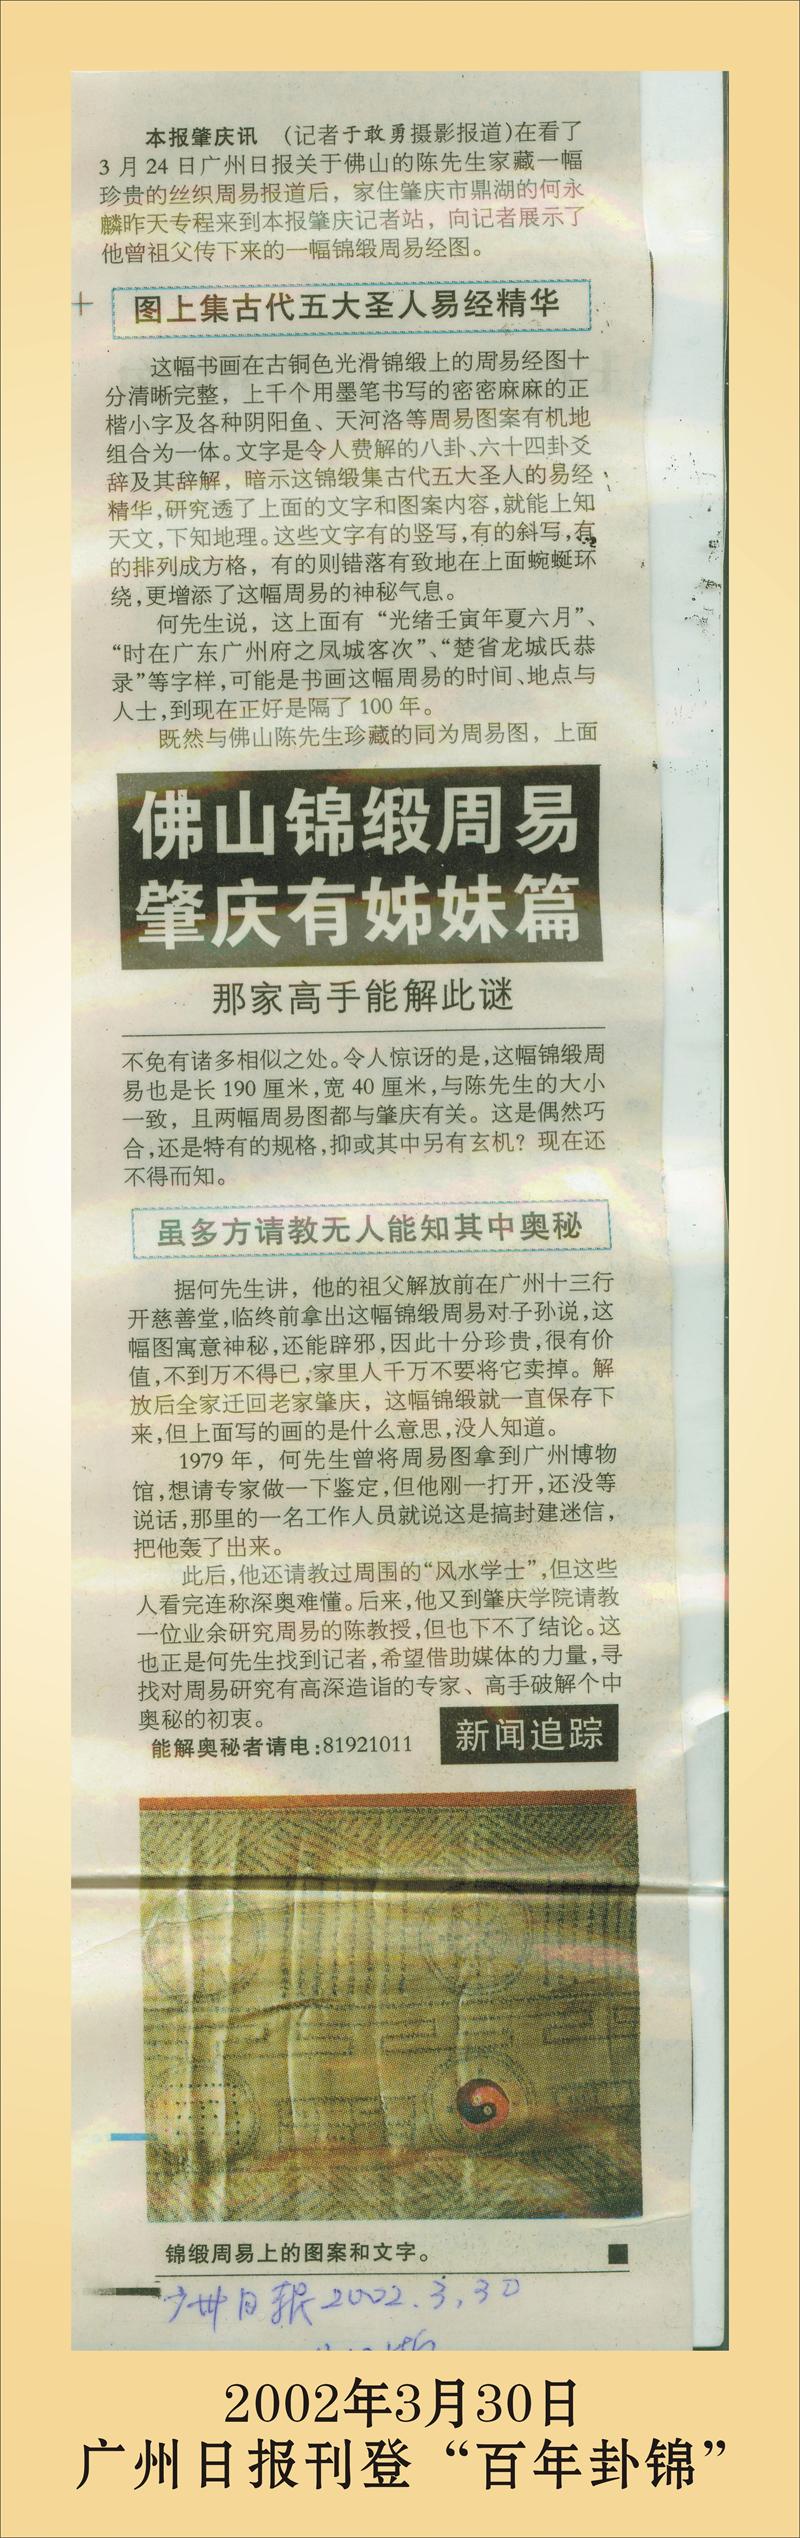 复件 2、2002年3月30日广州日报刊登“百年卦锦”.jpg